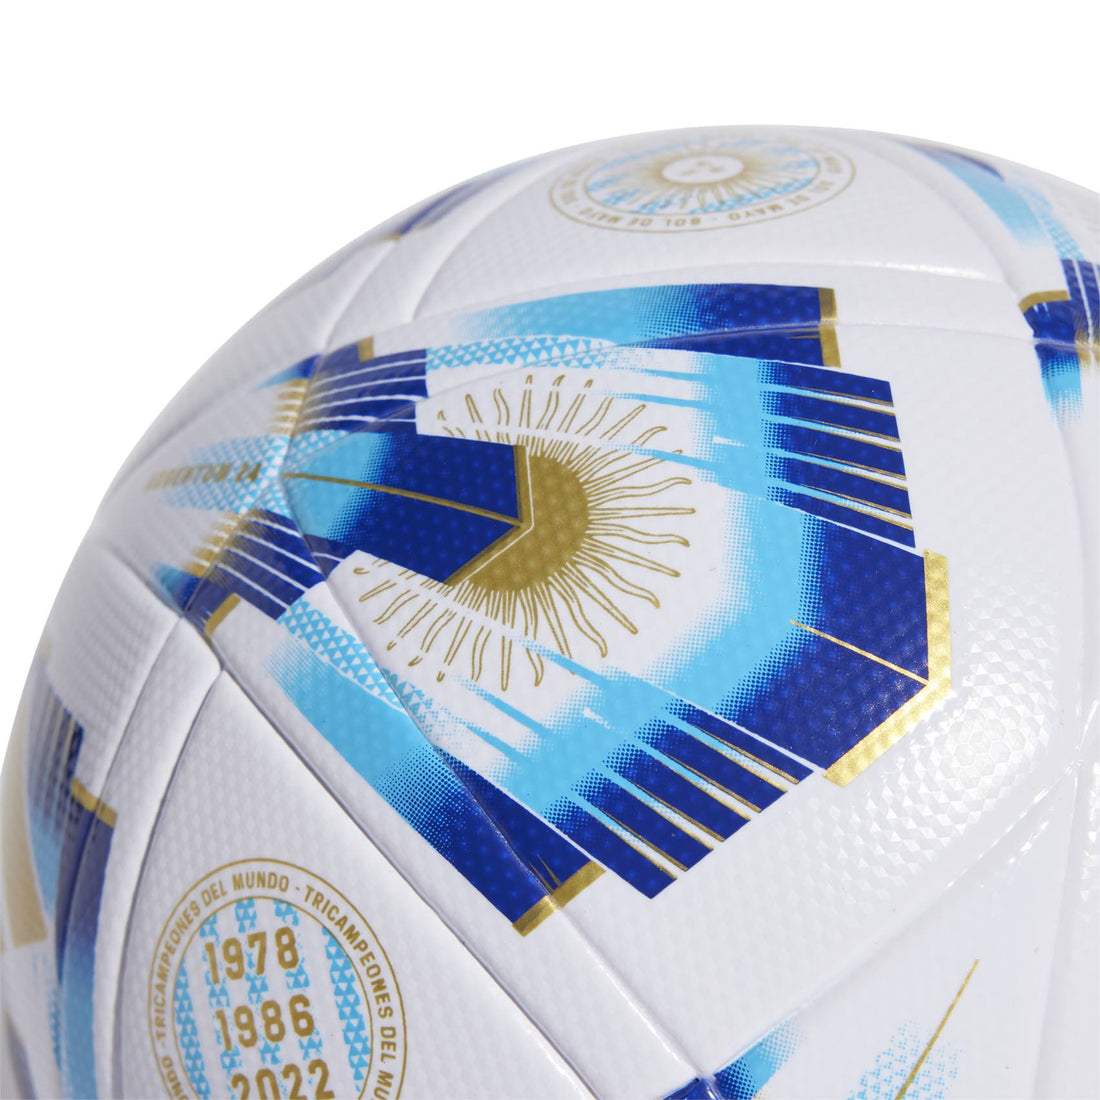 Ballon de football de la Ligue Argentine 24